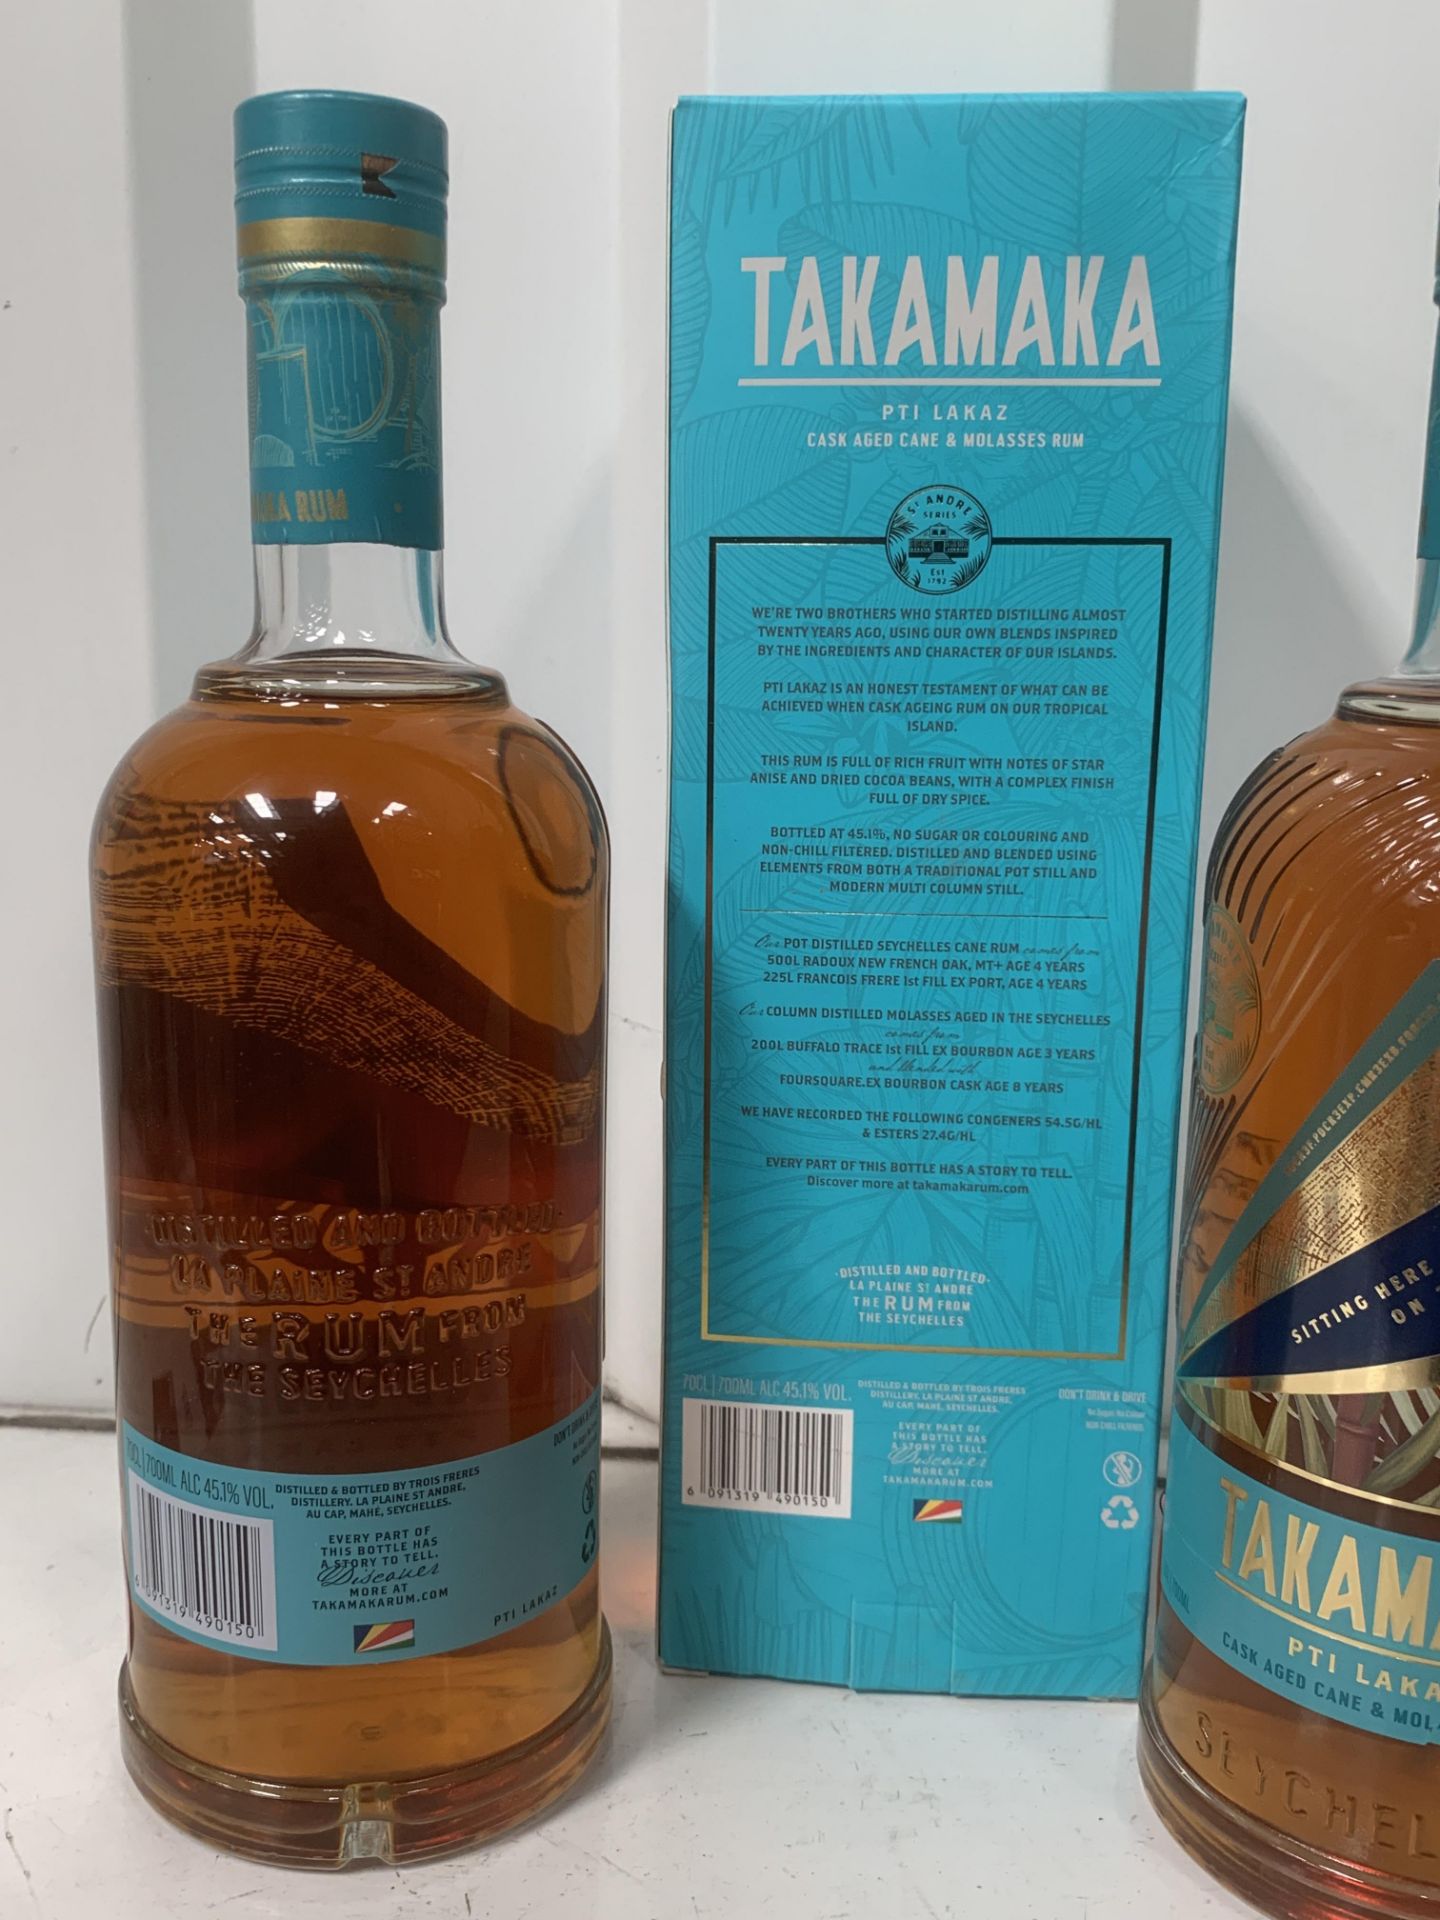 3x Bottles of Takamaka Pti Lakaz Rym 45.1%, 70cl - Image 3 of 3